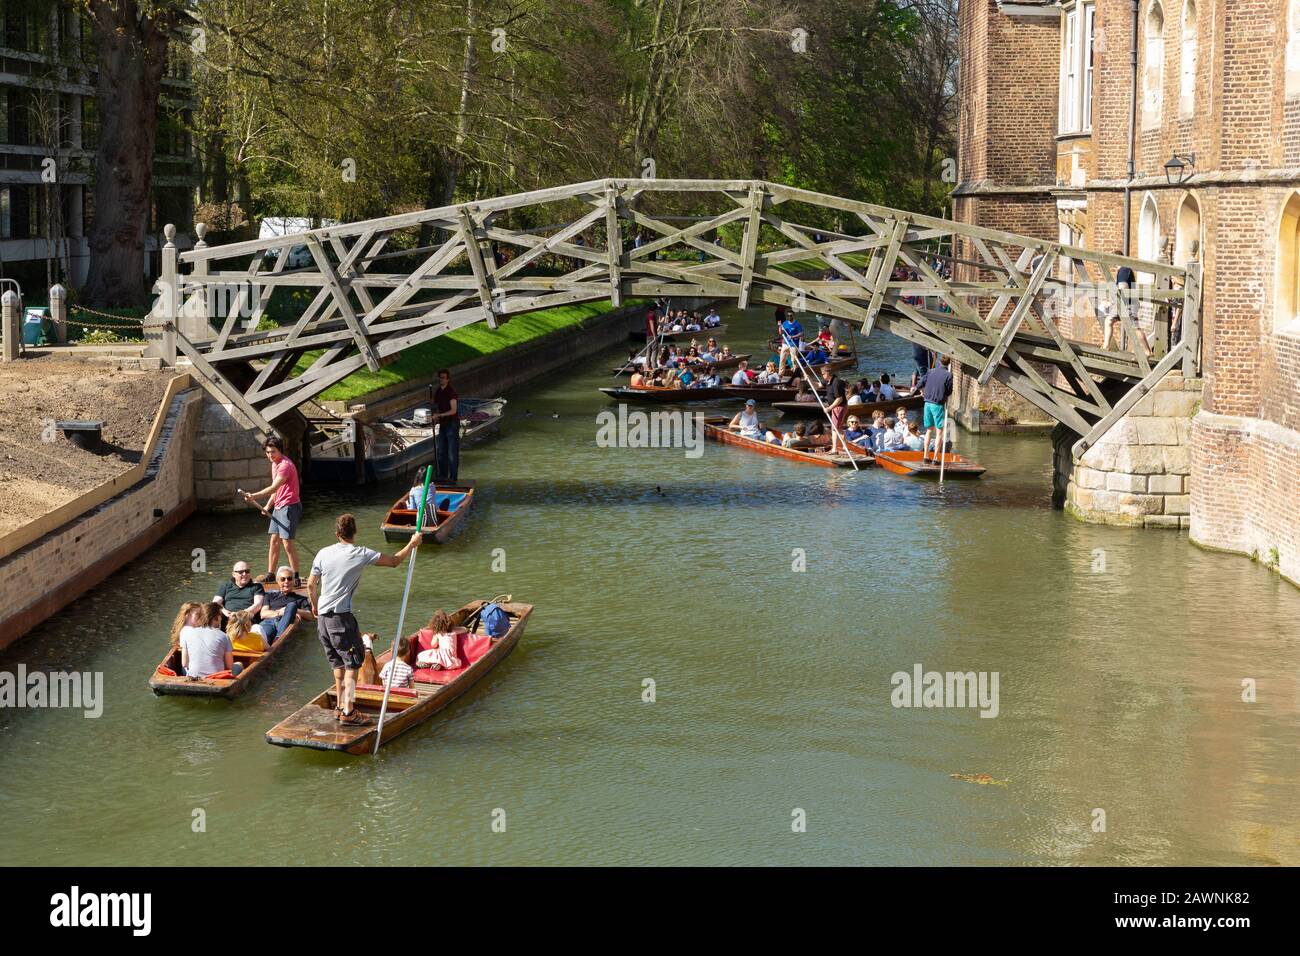 Mathematical Bridge over the River Cam in Cambridge, United Kingdom Stock Photo